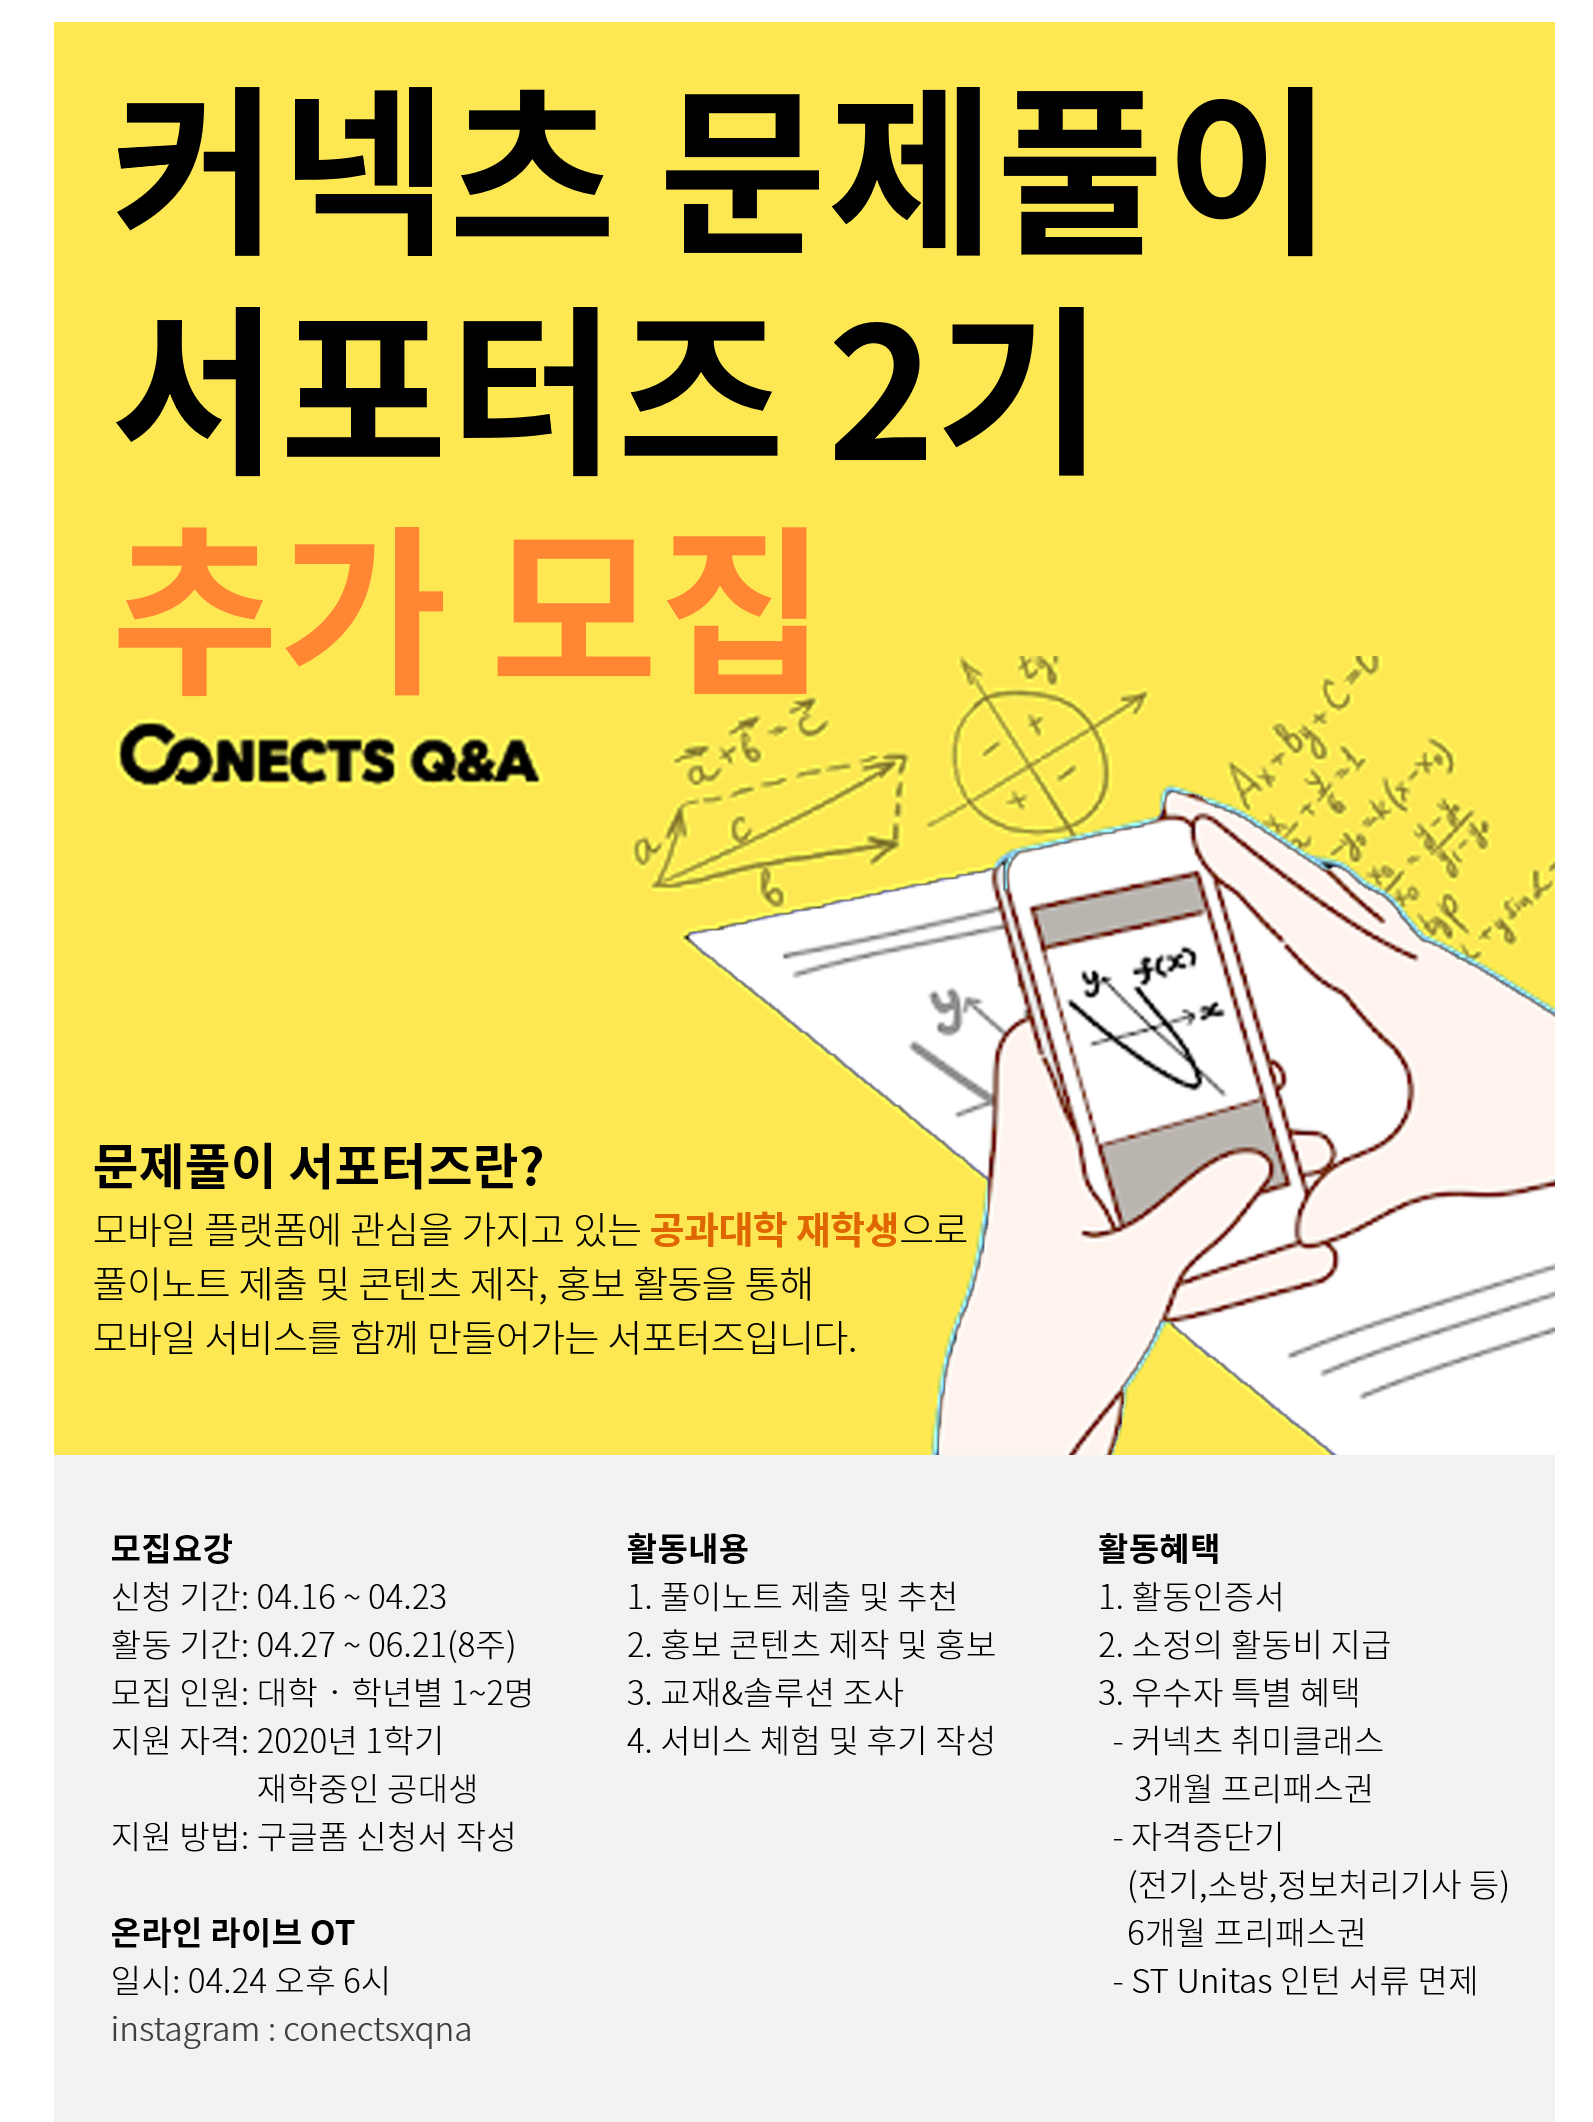 커넥츠 문제풀이 서포터즈 2기 추가모집 포스터(최종).png